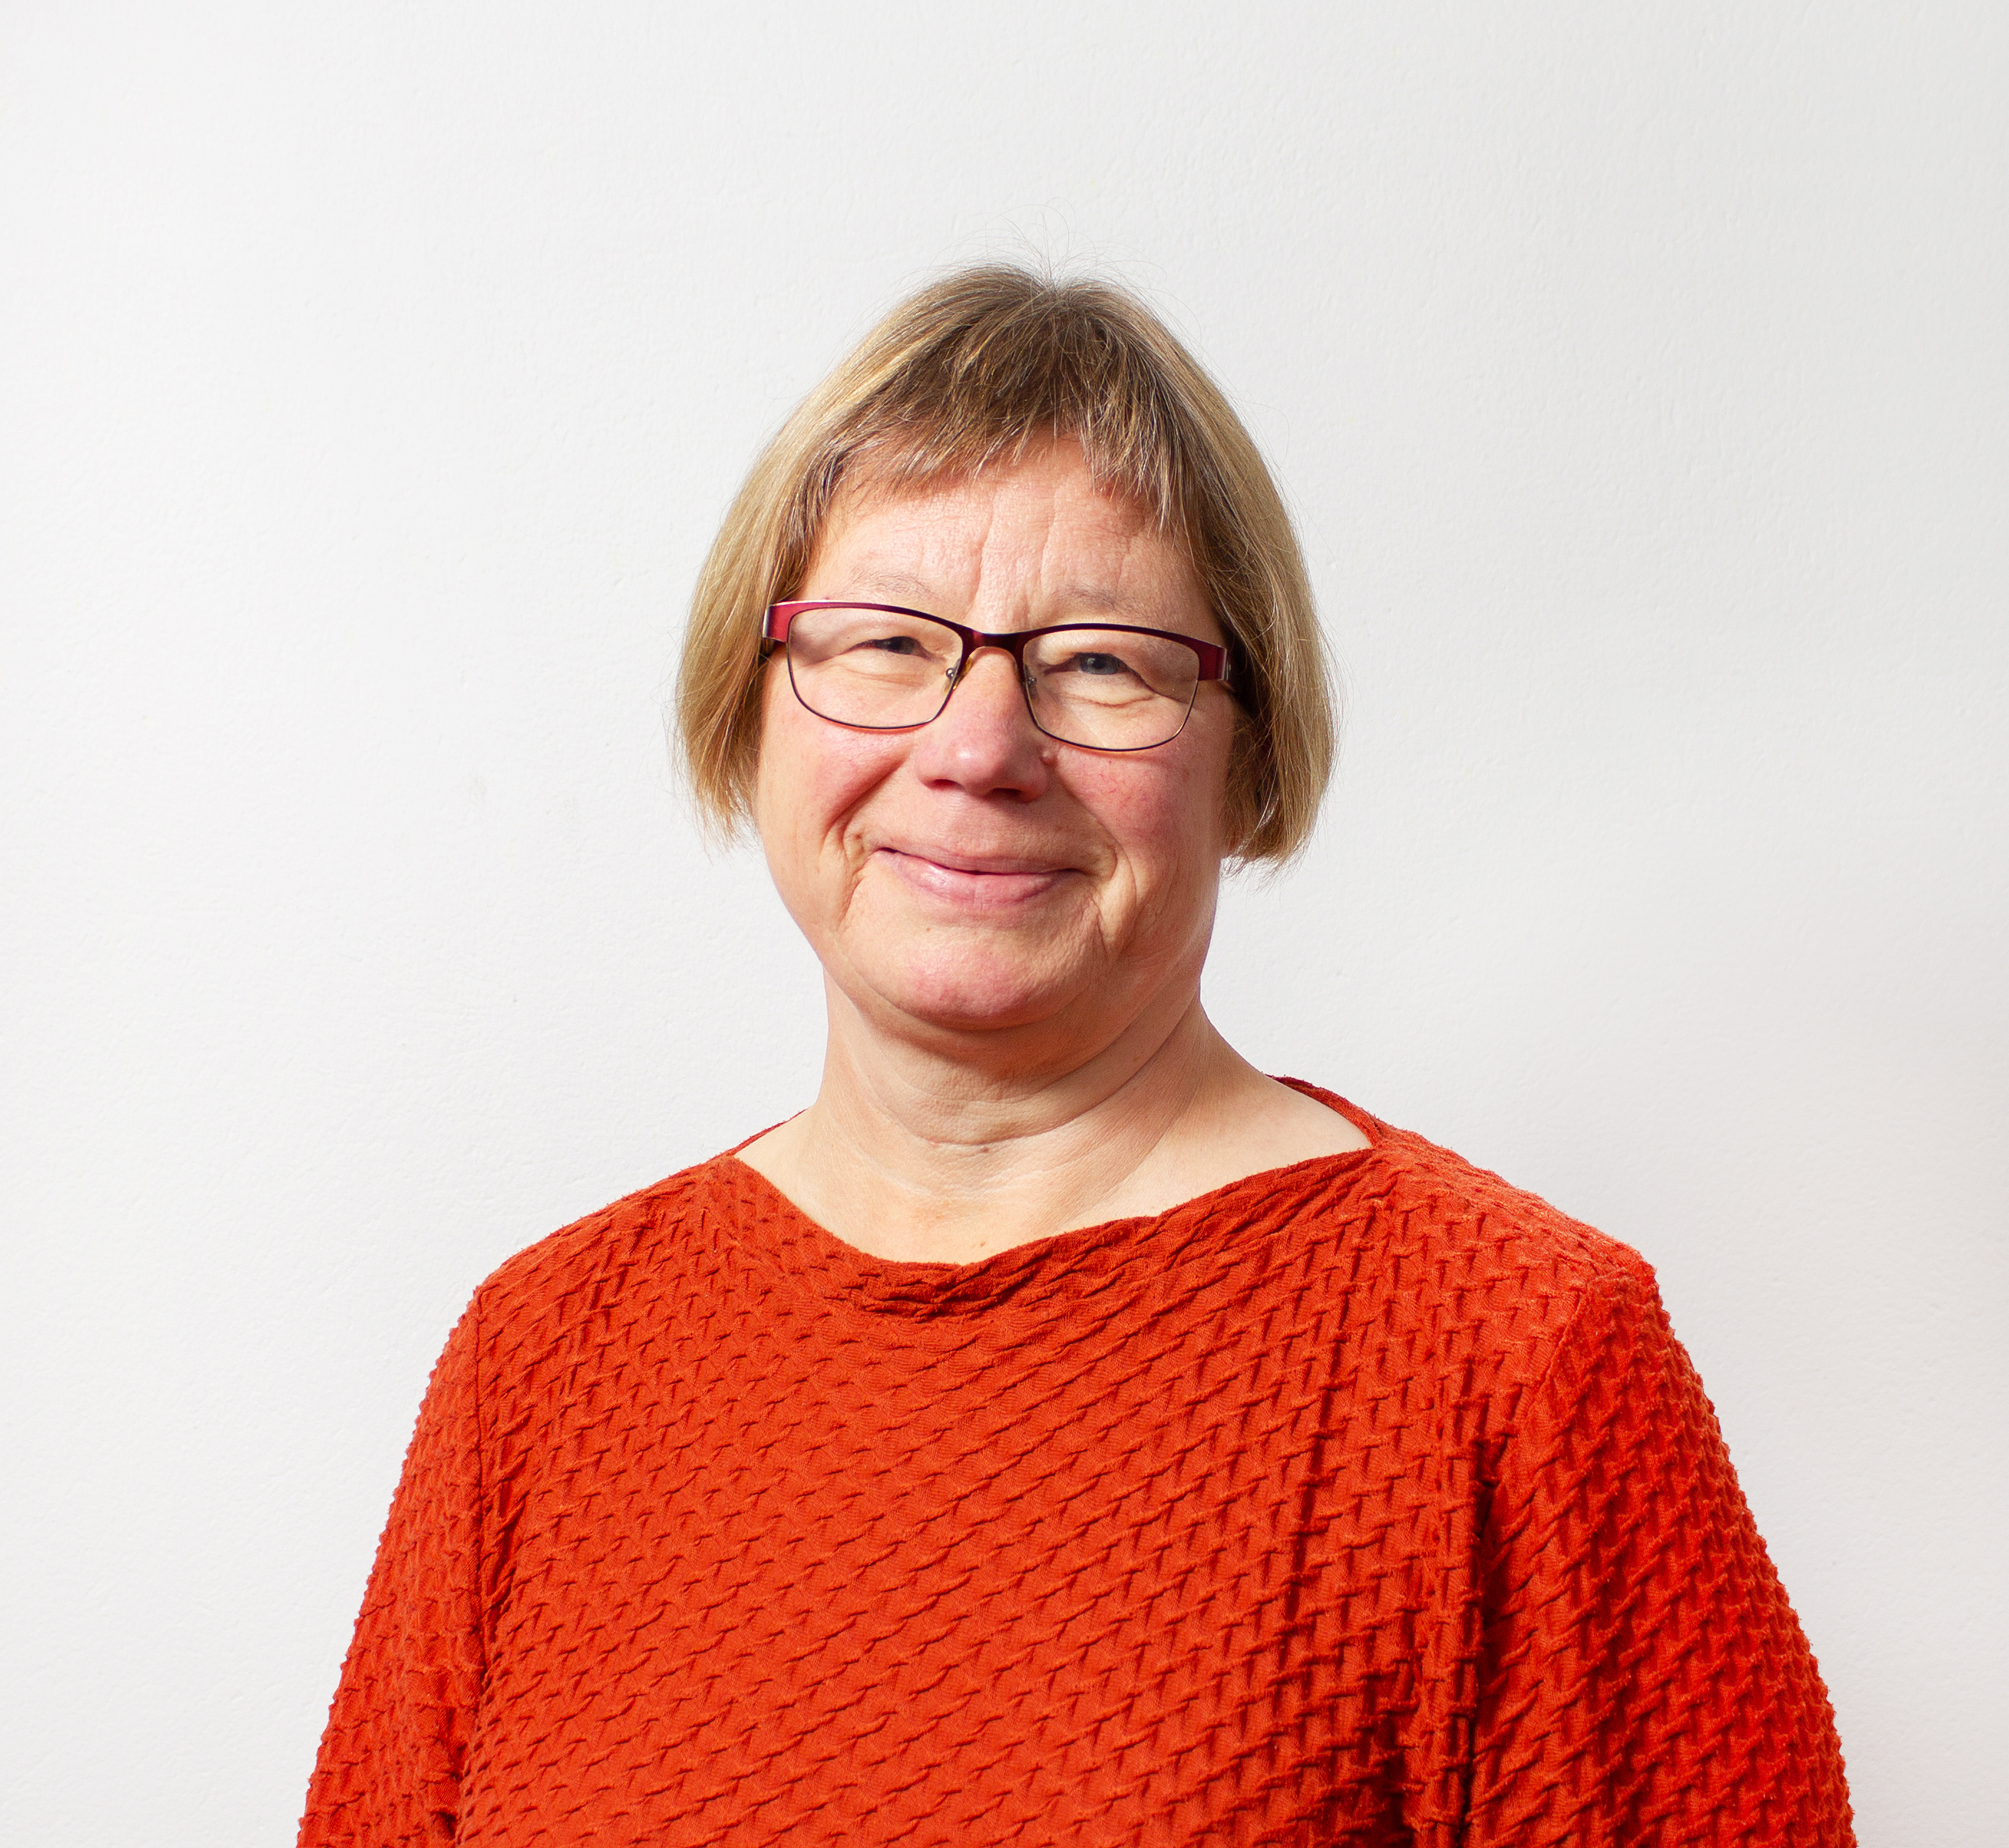 Anne Bergljot Skoglund er ny stiftsdirektør i Nord-Hålogaland bispedømme. Hun har bakgrunn som prest og prost i Alta gjennom 23 år. Hun har erfaring fra roller som hovedtillitsvalgt og nestleder i presteforeningen, samt arbeid i menighetsråd og fellesråd. Skoglund tiltrer stillingen 1. august.